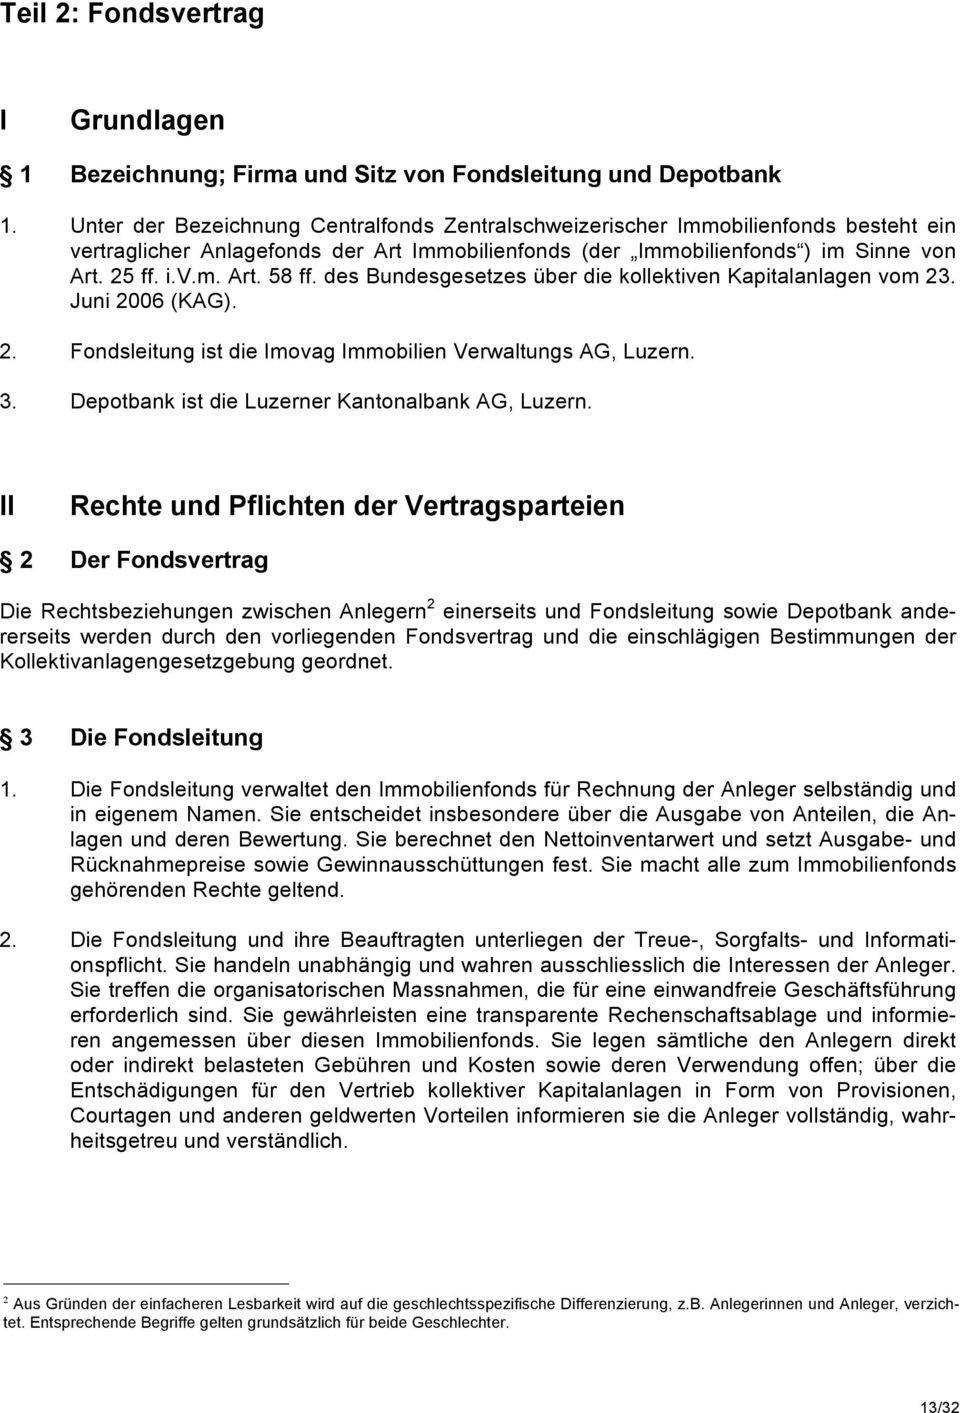 des Bundesgesetzes über die kollektiven Kapitalanlagen vom 23. Juni 2006 (KAG). 2. Fondsleitung ist die Imovag Immobilien Verwaltungs AG, Luzern. 3. Depotbank ist die Luzerner Kantonalbank AG, Luzern.